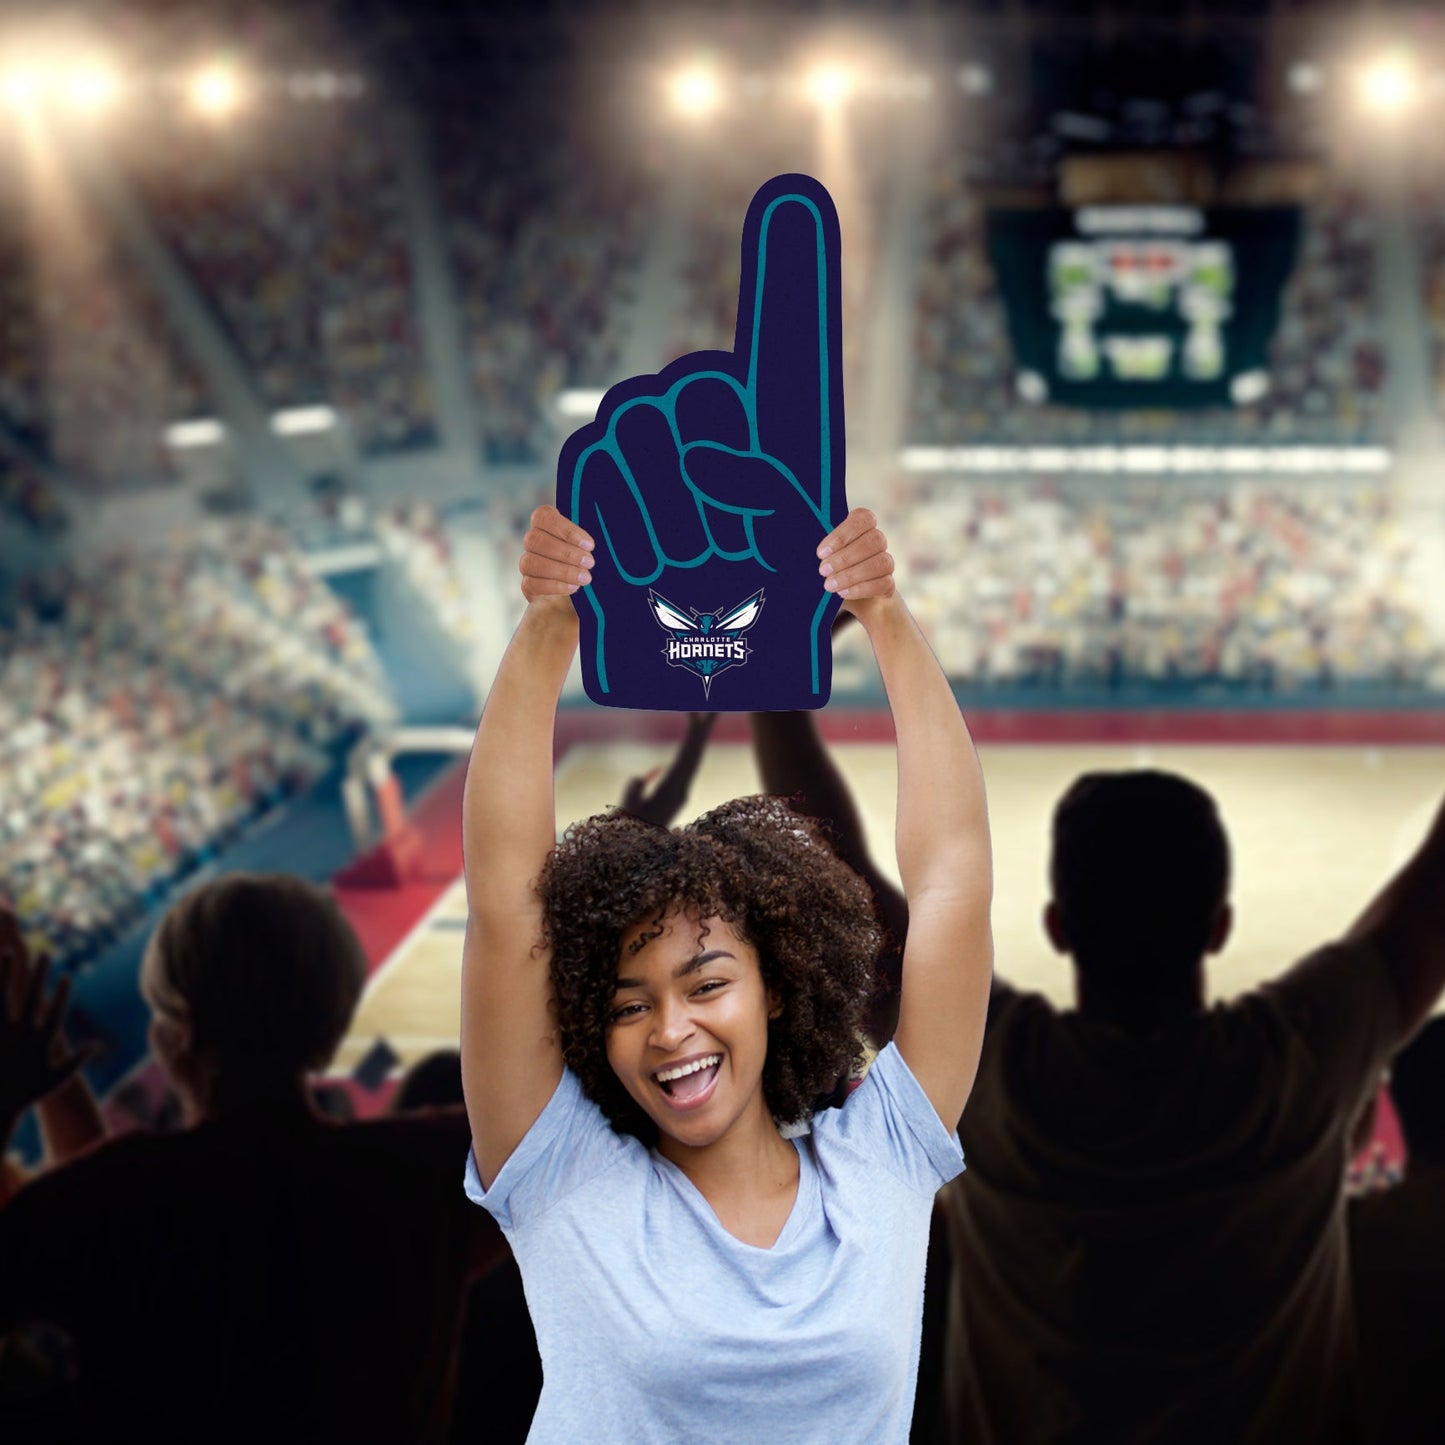 Charlotte Hornets: Foamcore Foam Finger Foam Core Cutout - Officially Licensed NBA Big Head